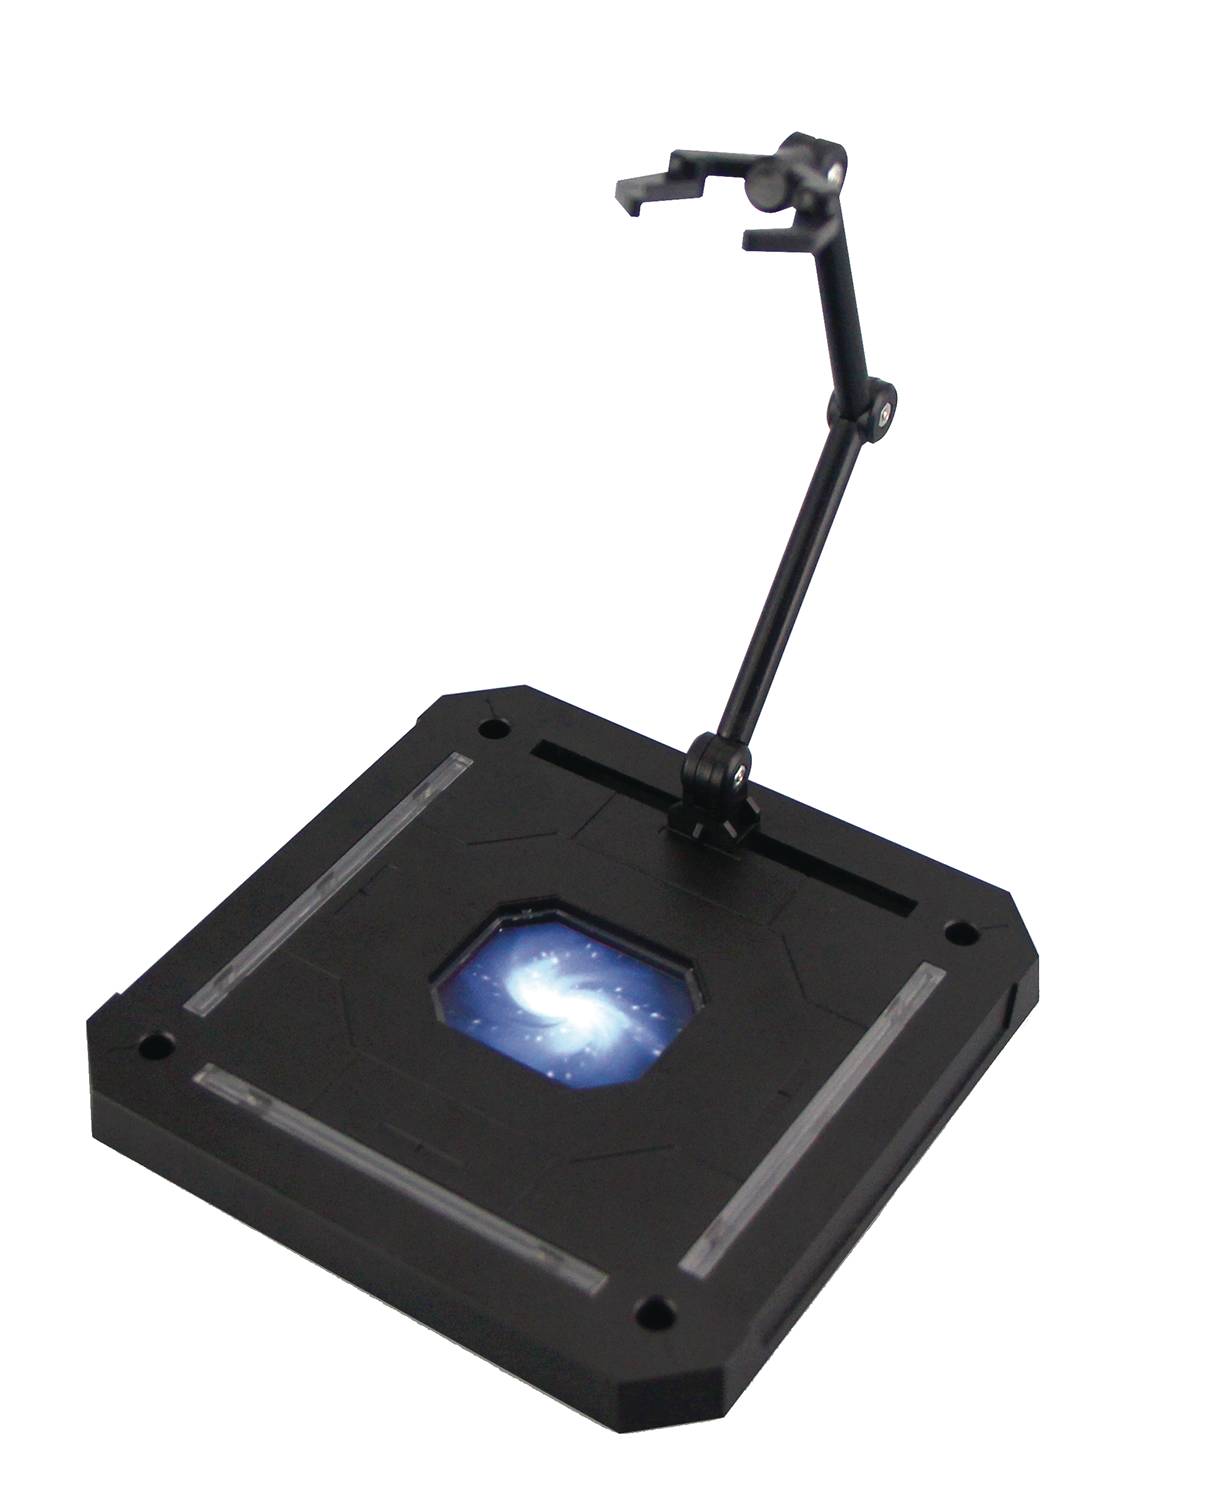 Sen-Ti-Nel X Board Figure Display Stand